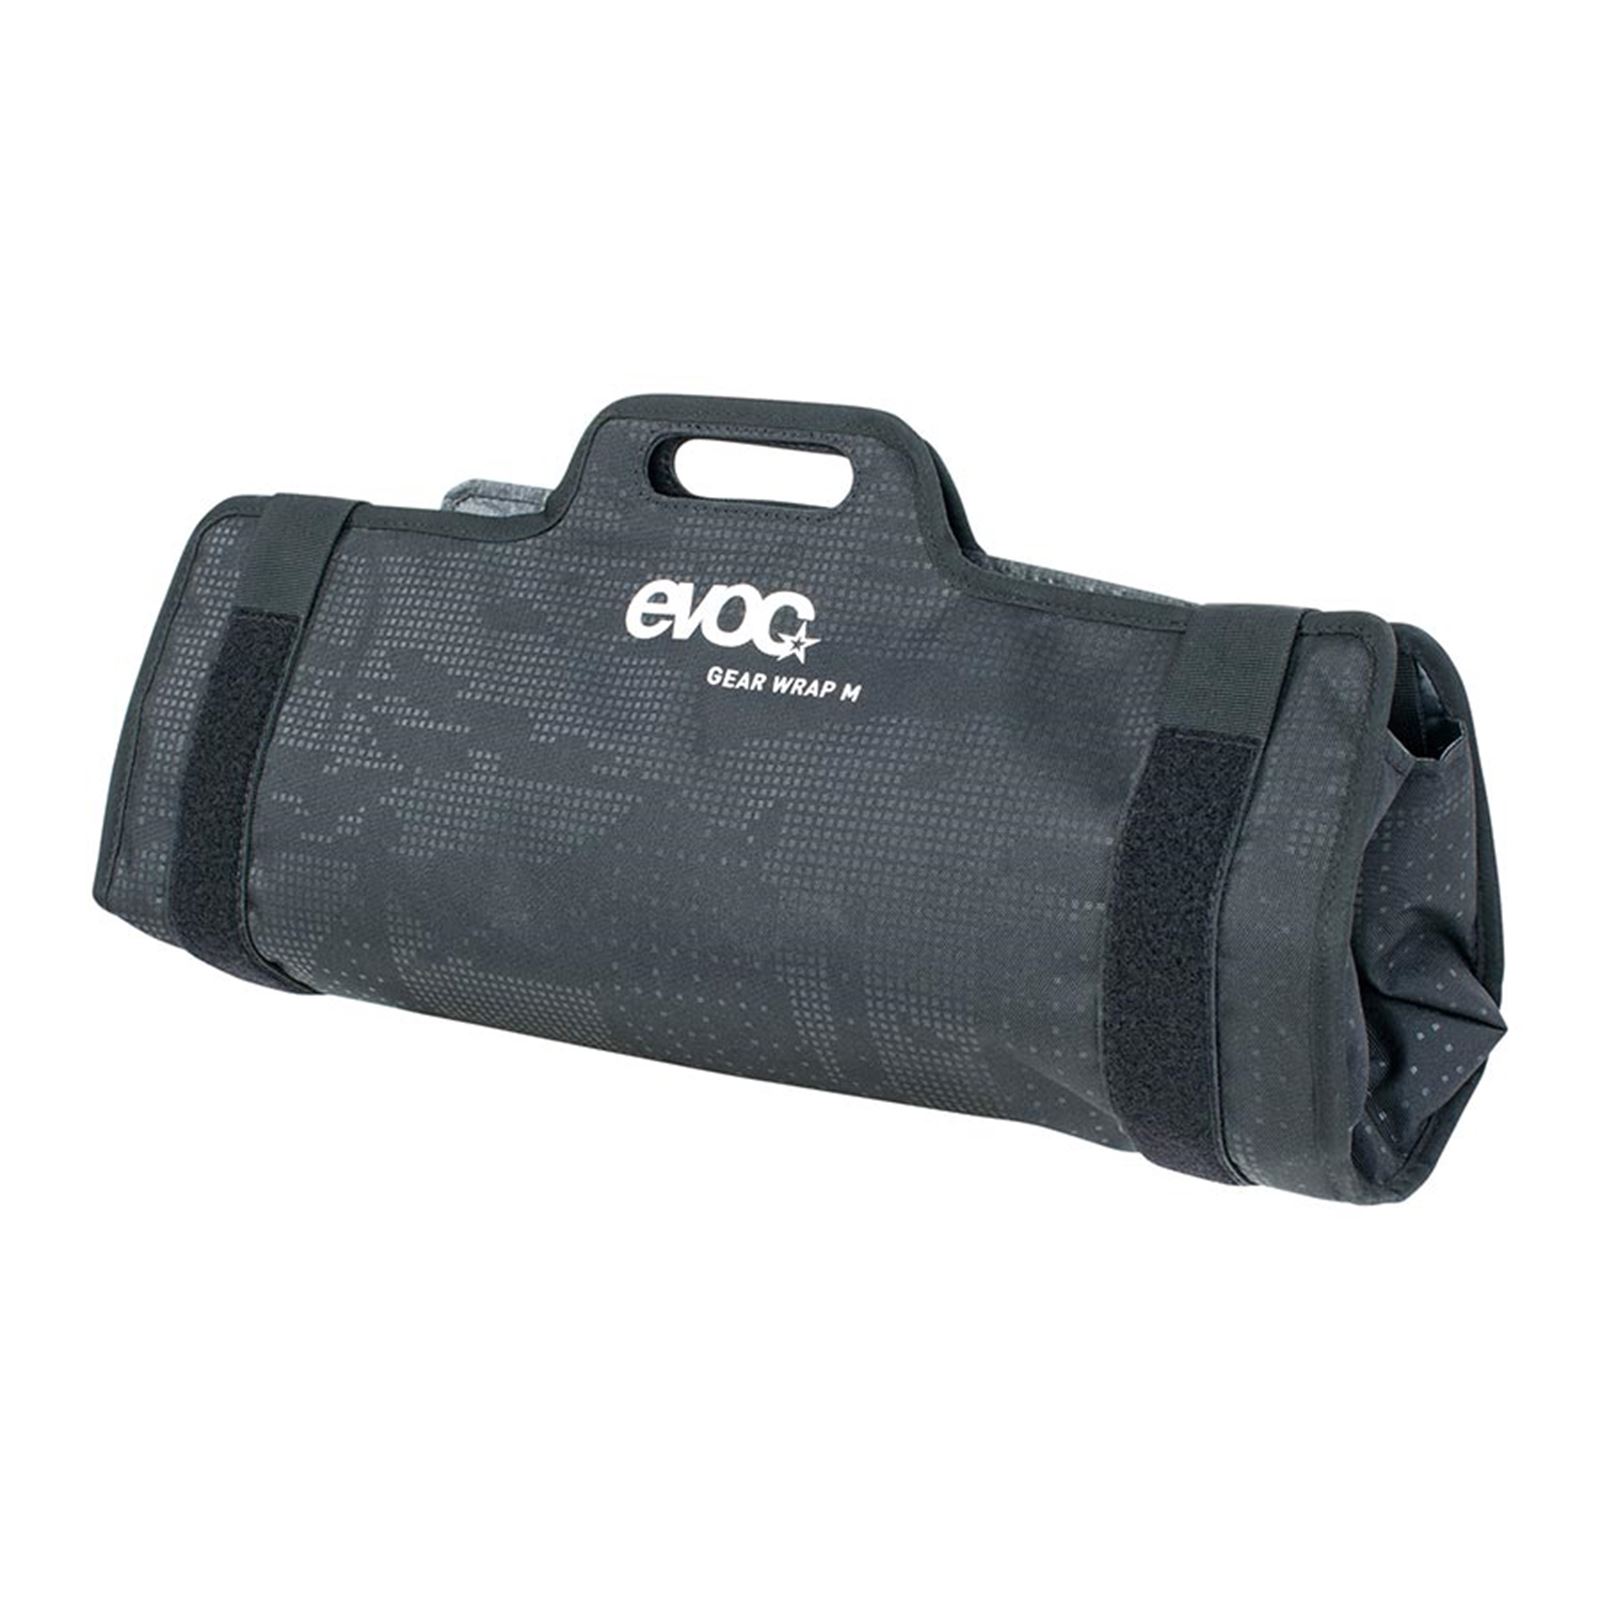 EVOC Gear Wrap - Black - 27.5"x19.7"x3.9"